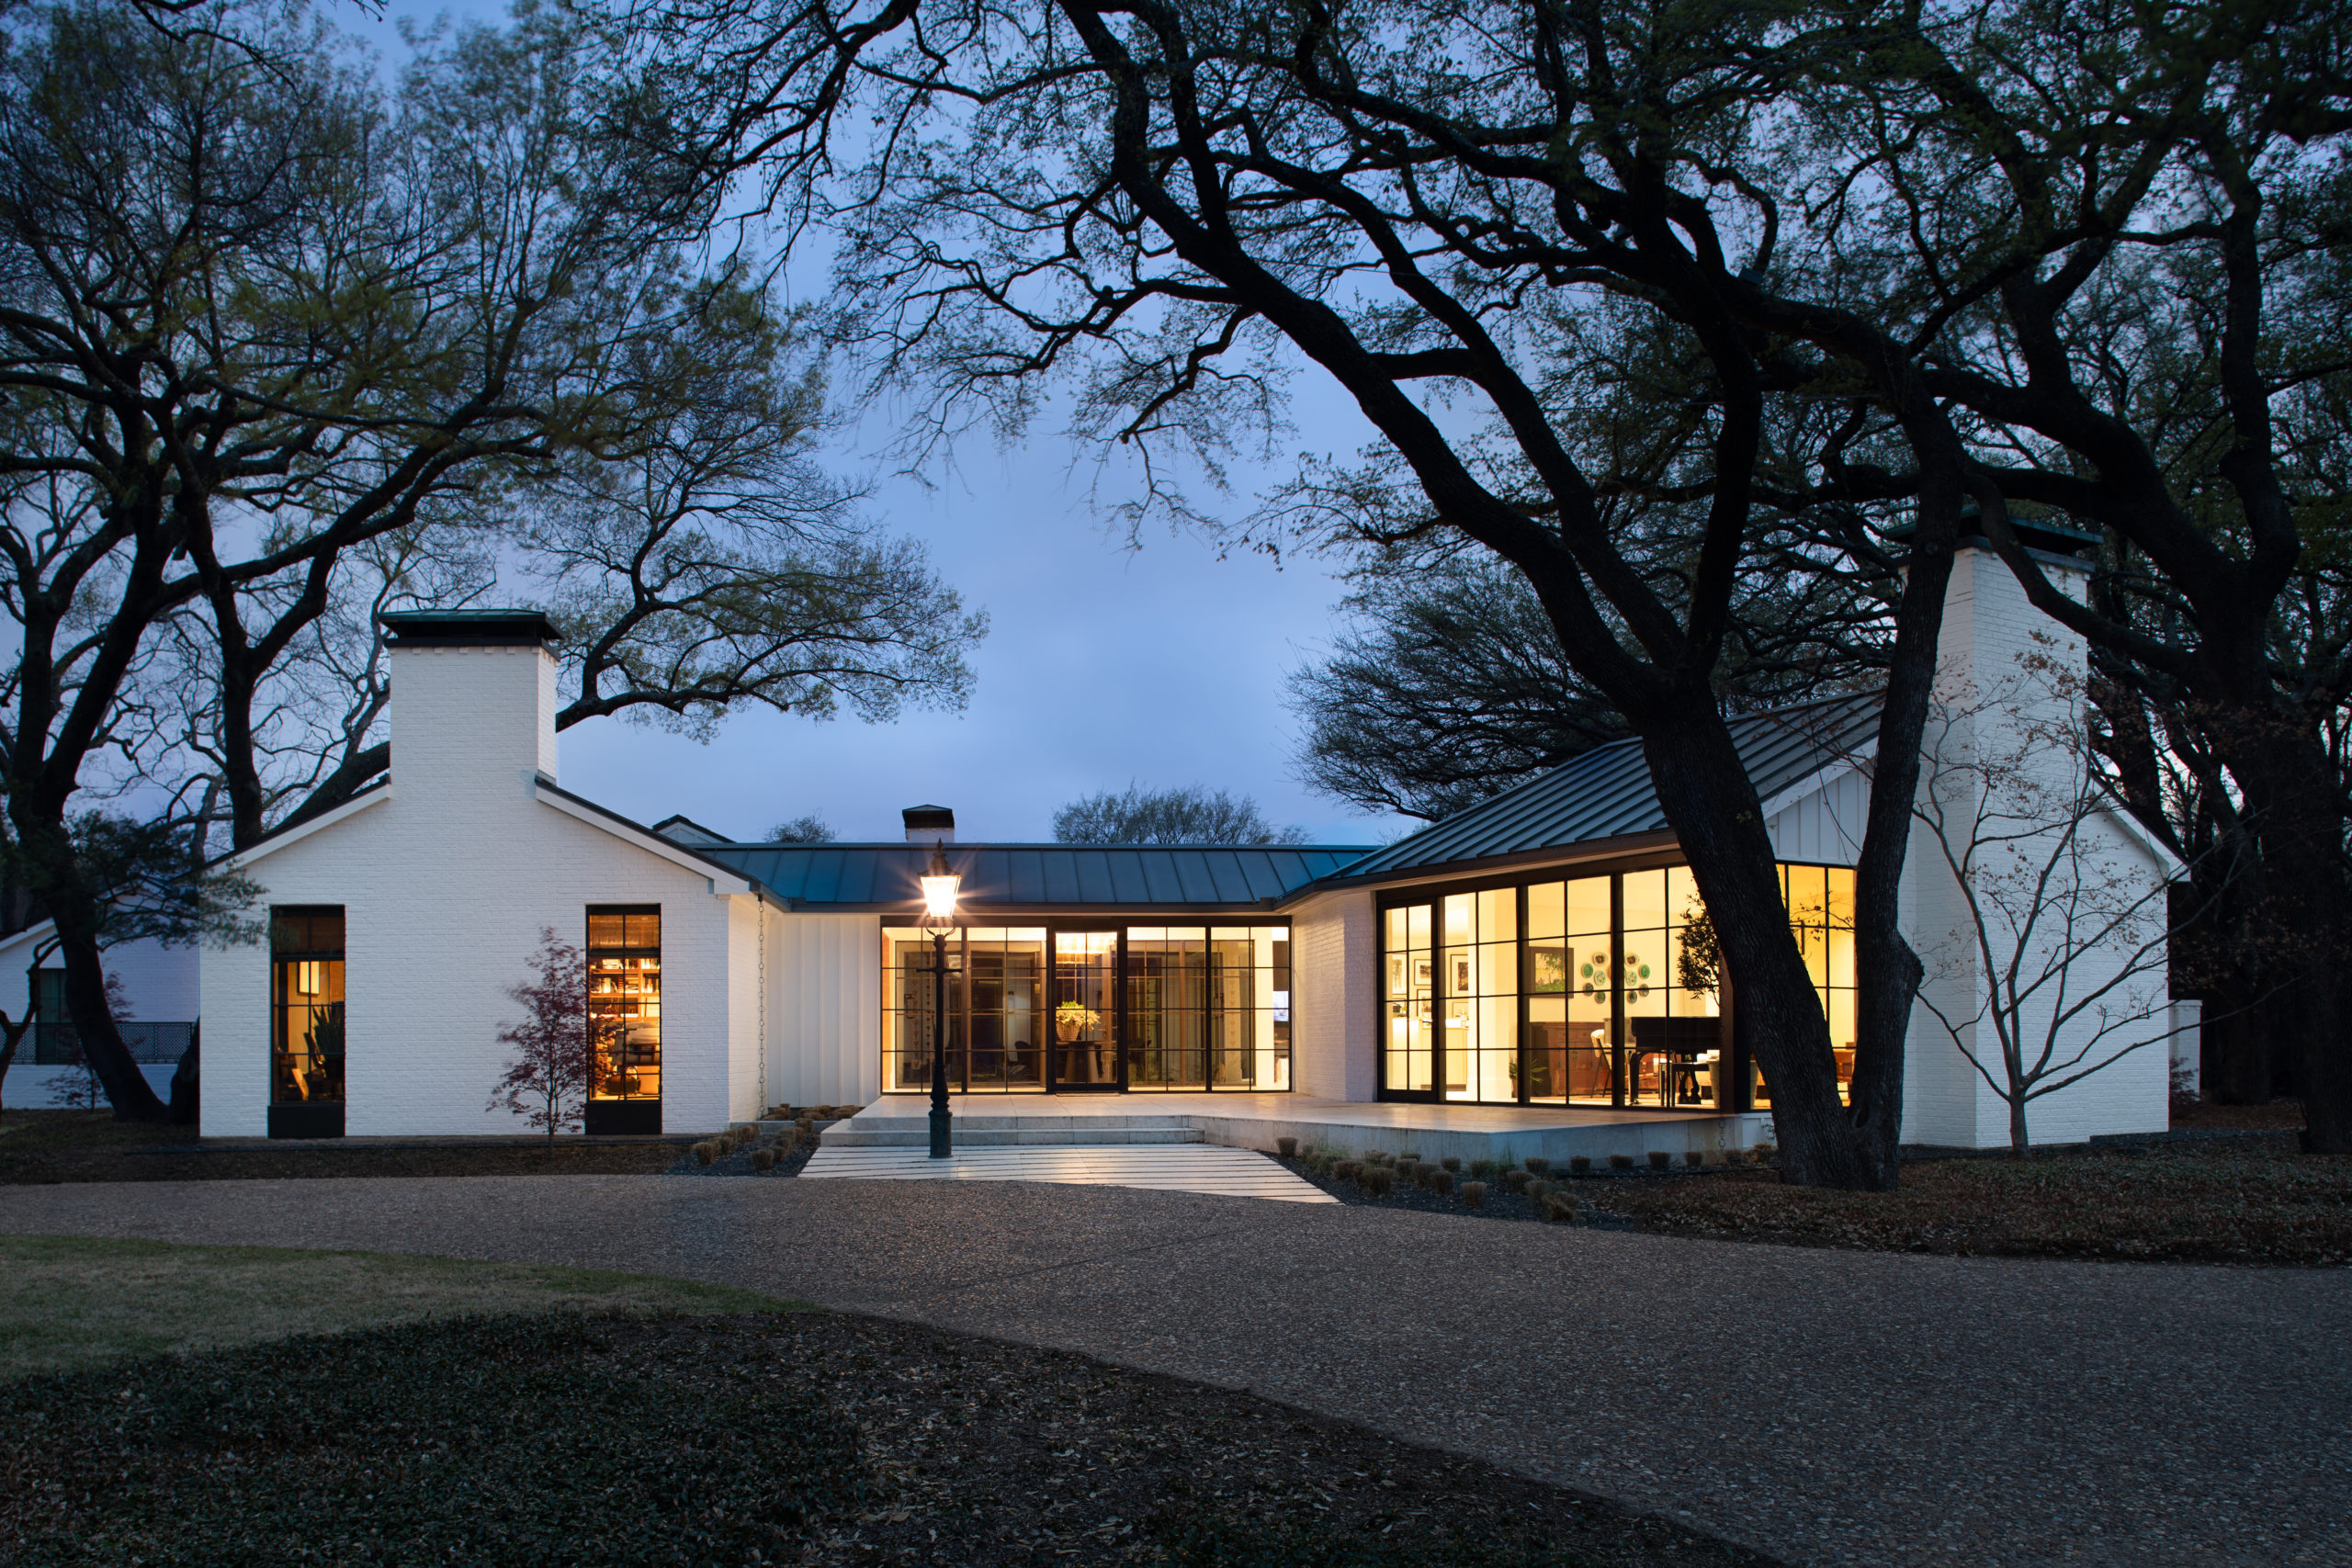 Livable Luxury, Interior Design In East Dallas